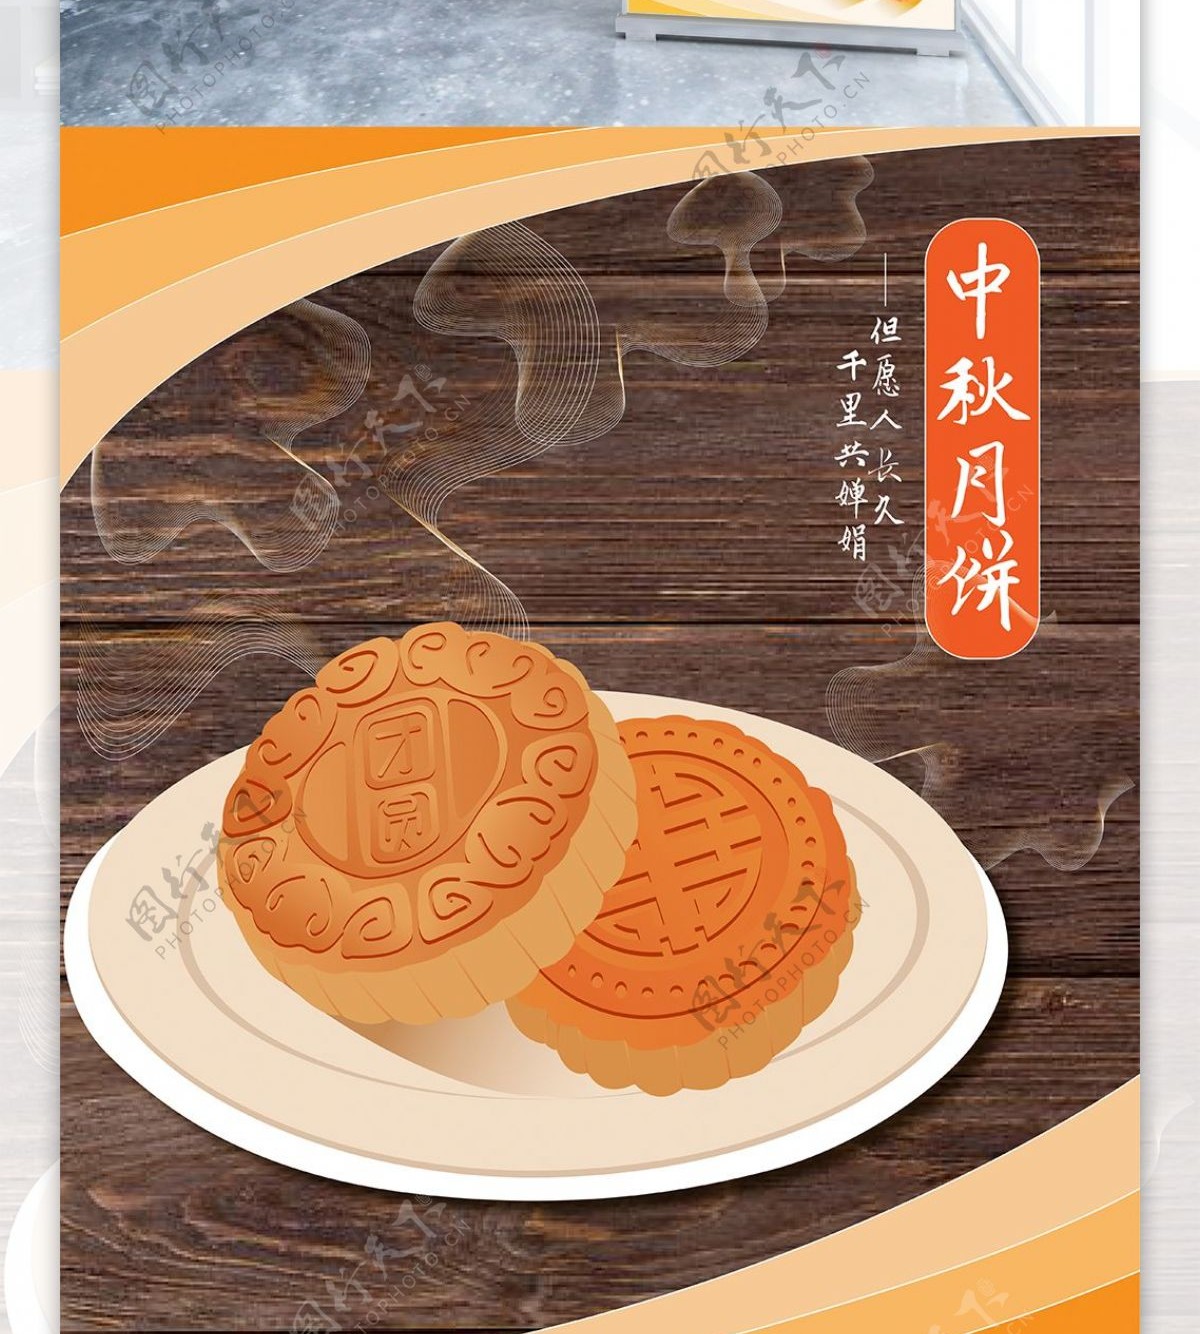 中秋节月饼新品上市促销活动简约节日易拉宝